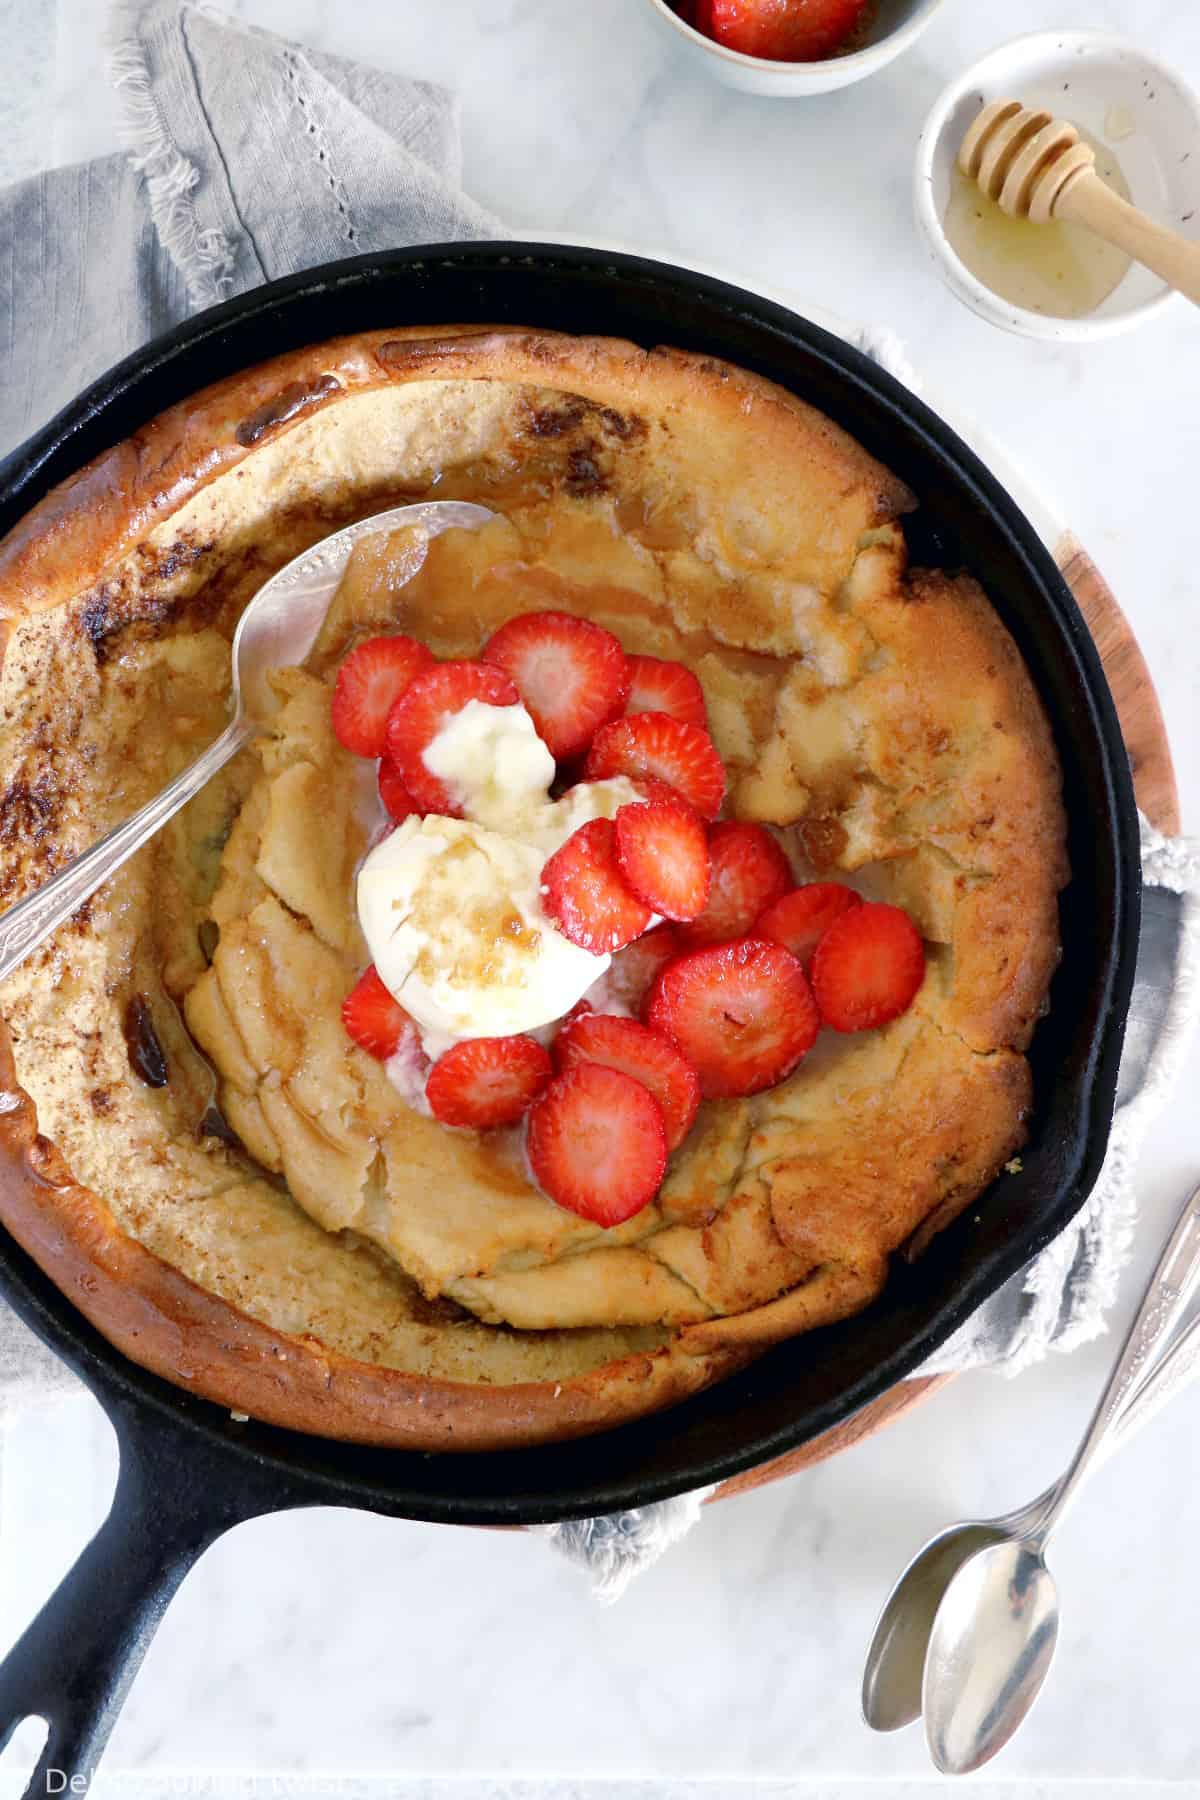 Les amoureux de pancakes vont adorer ce Dutch baby pancake au beurre noisette et aux fraises.